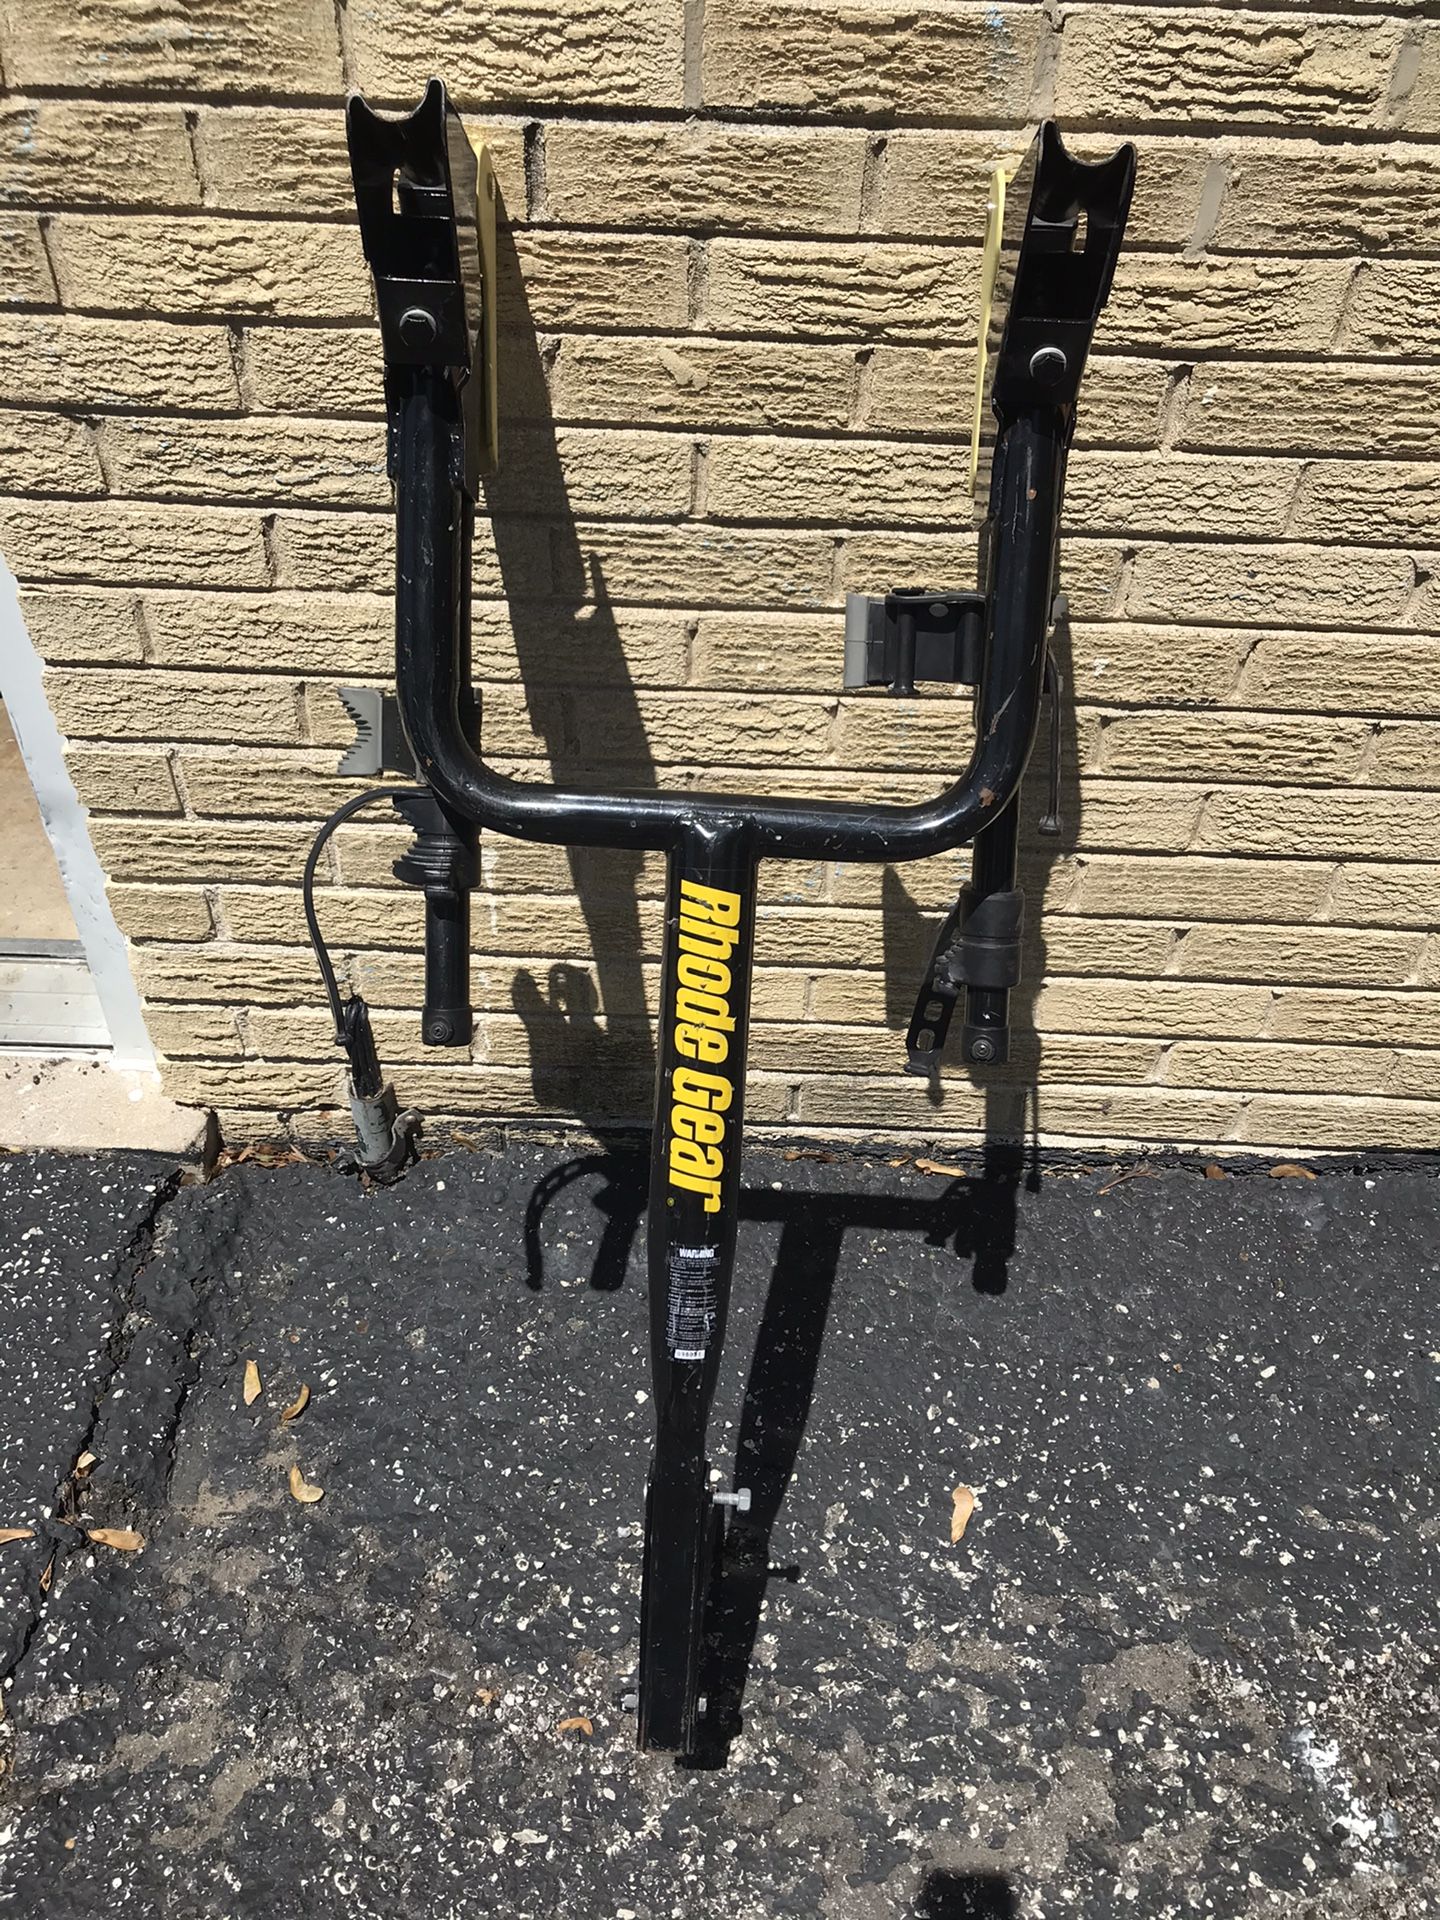 Rhode Gear bike rack